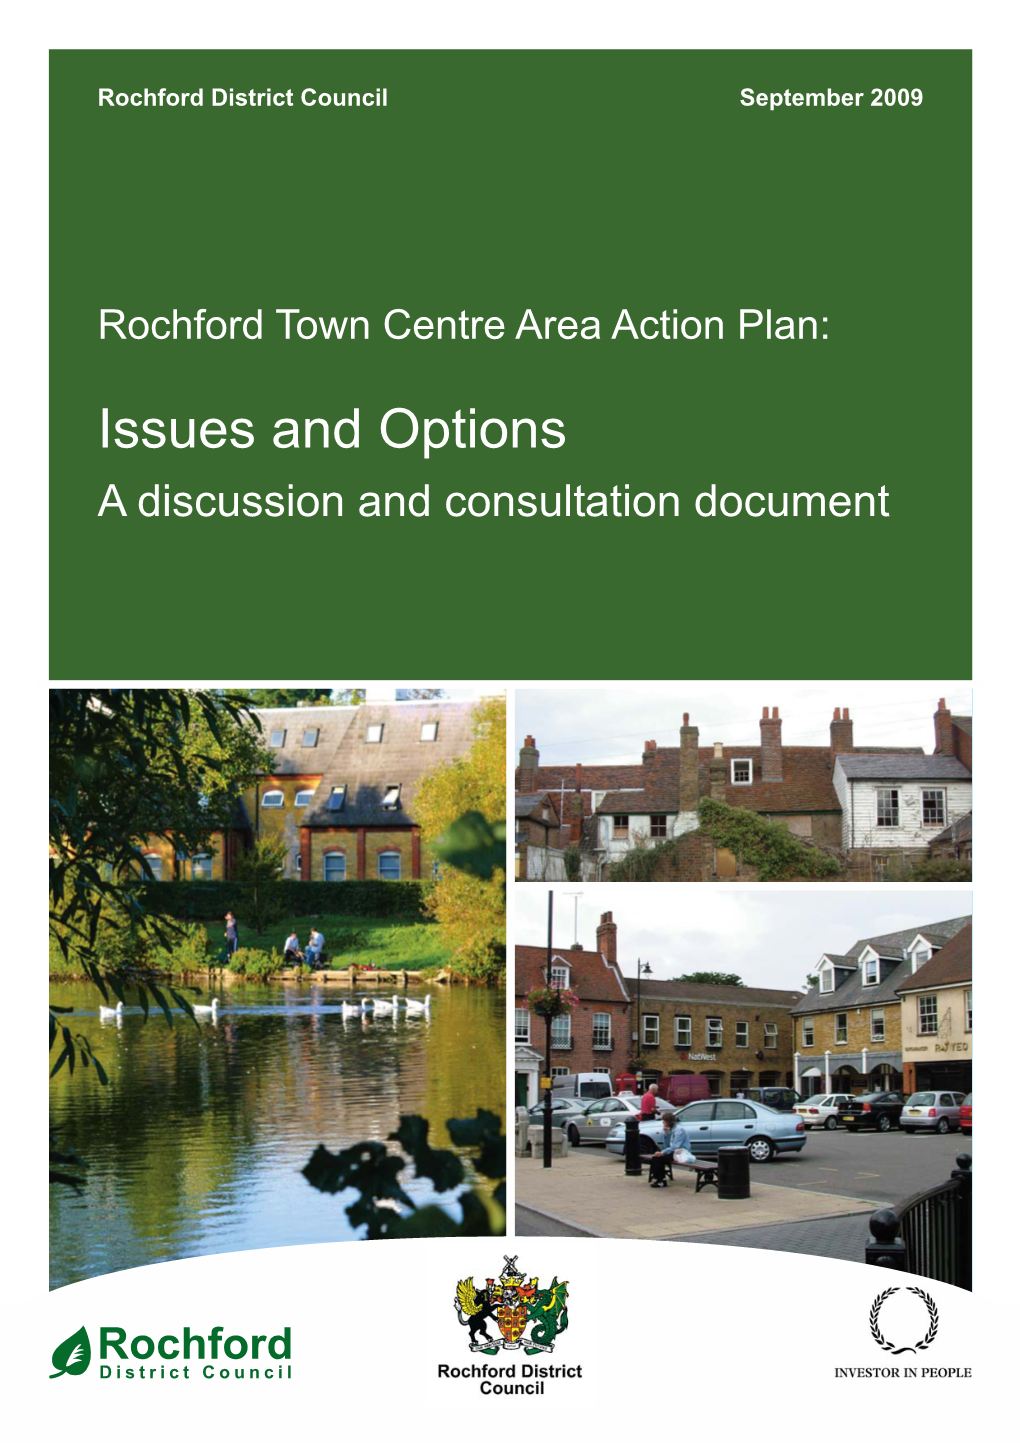 Rochford Town Center Area Action Plan